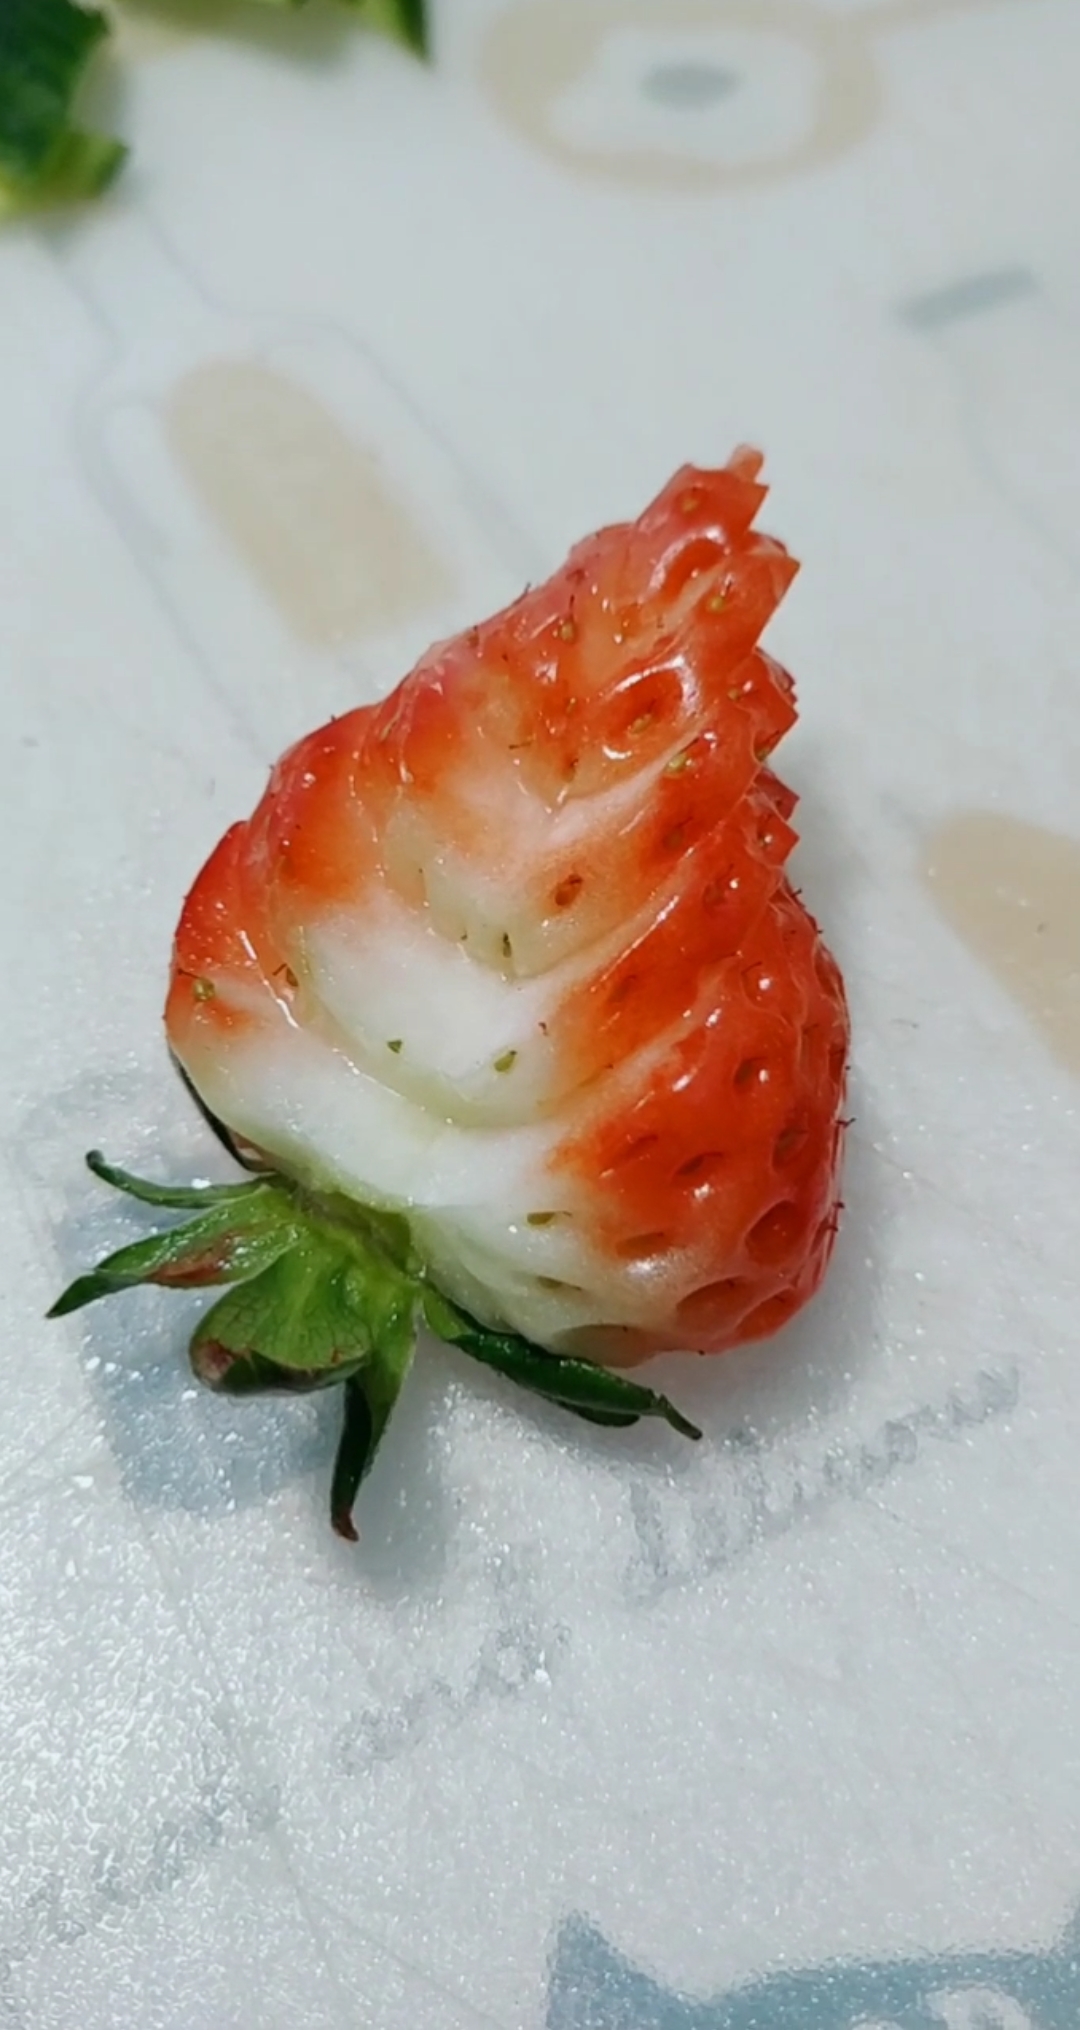 草莓花样切法图片图片